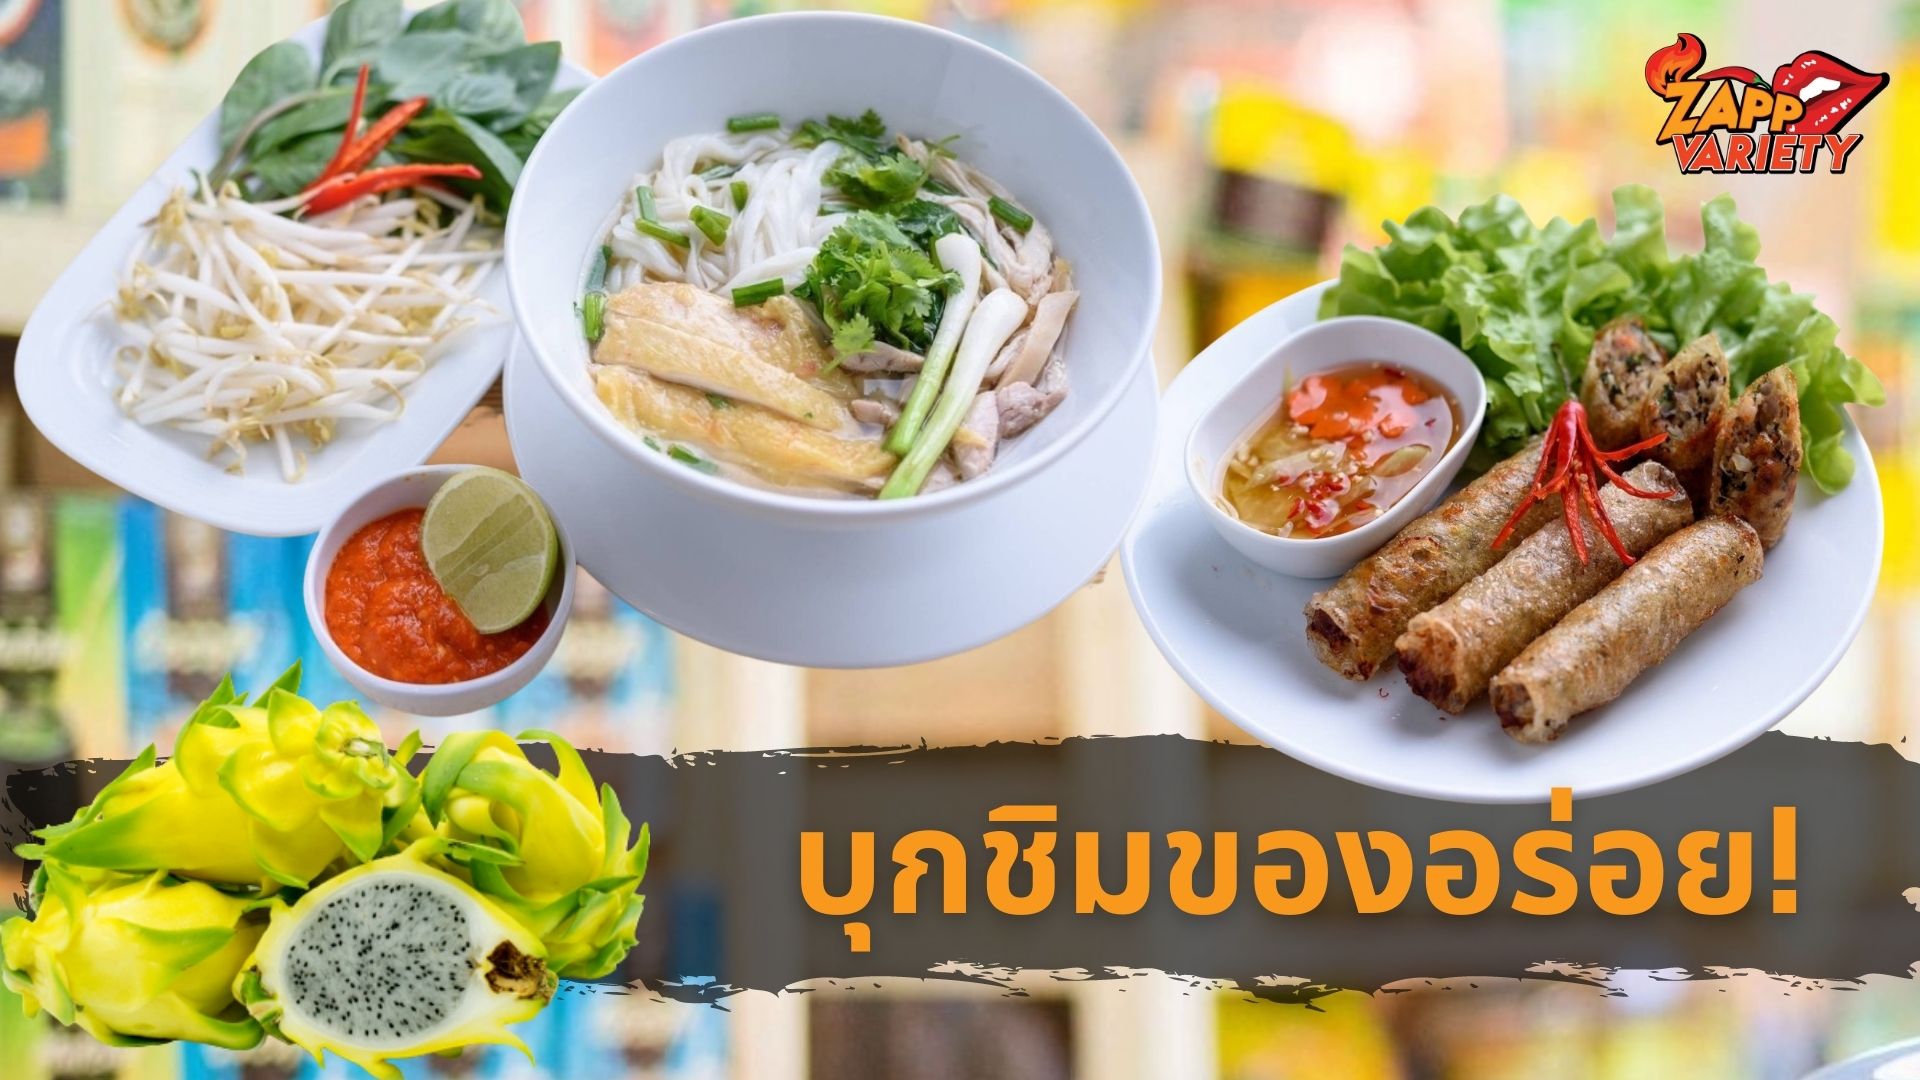 บุกเซ็นทรัลฯ อุดร! พาชิม-ช้อปสินค้าจากเวียดนาม  ในงาน “Vietnamese Goods Week - Udon Thani 2021” 